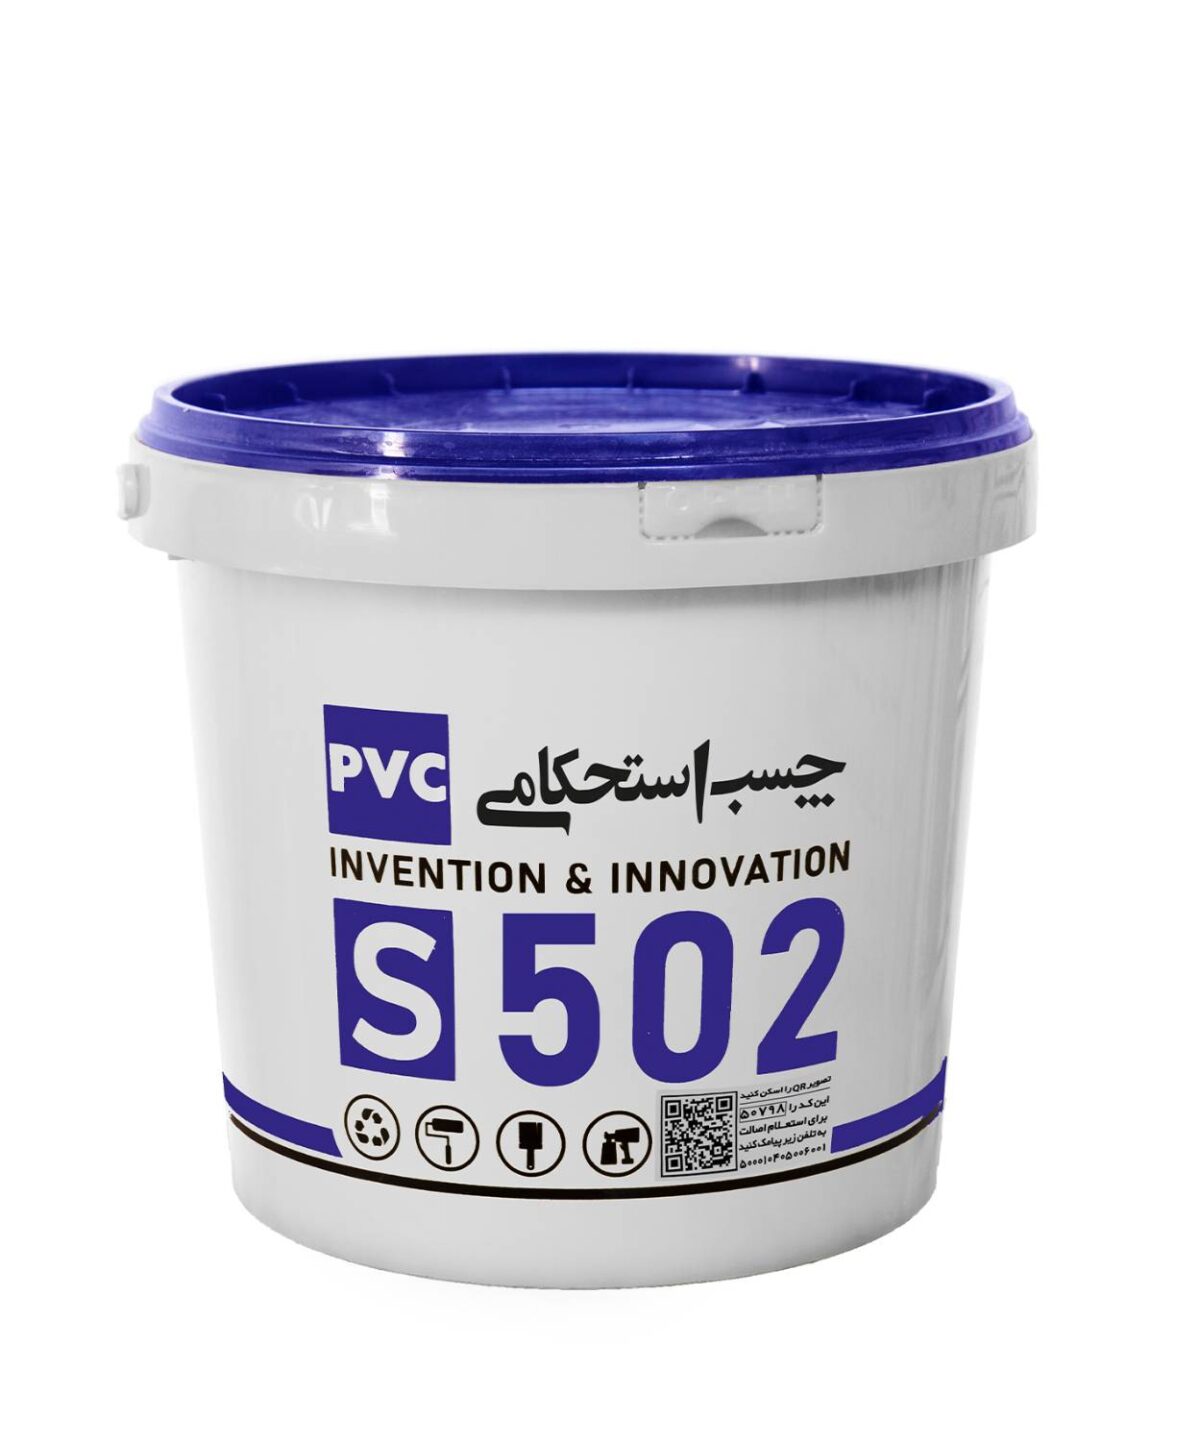 چسب استحکامی PVC S502 خمیری 20 کیلوگرمی - شرکت آکوارزین